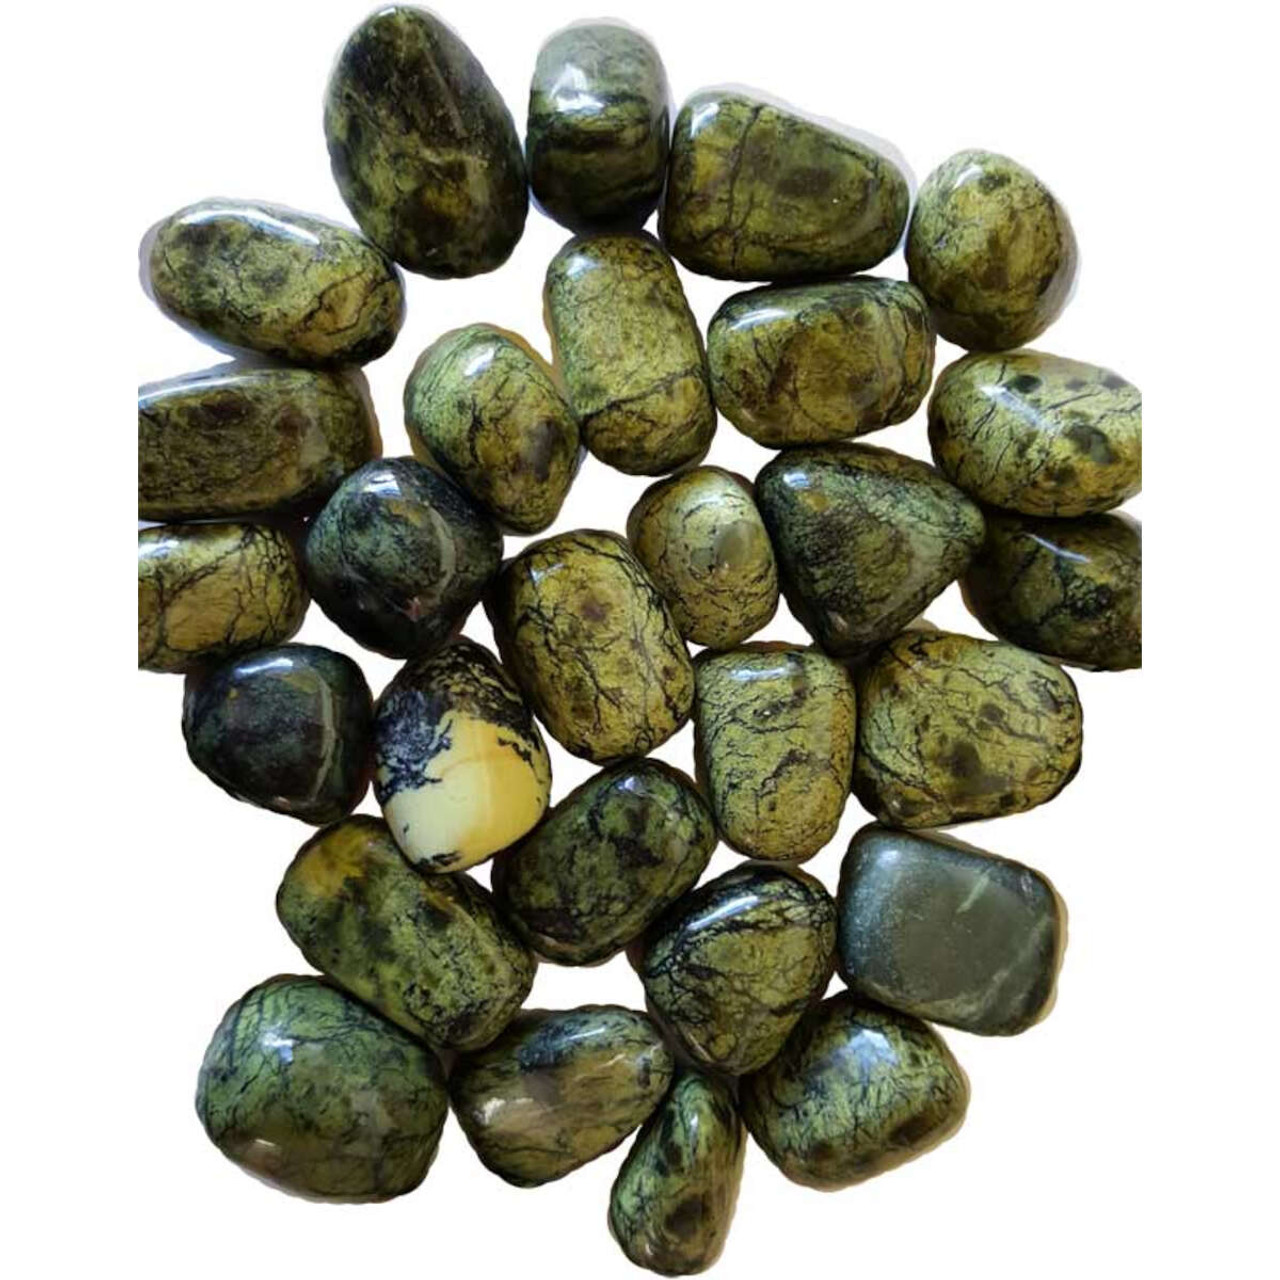 Asterite Serpentine Tumbled Gemstones 1 lb.